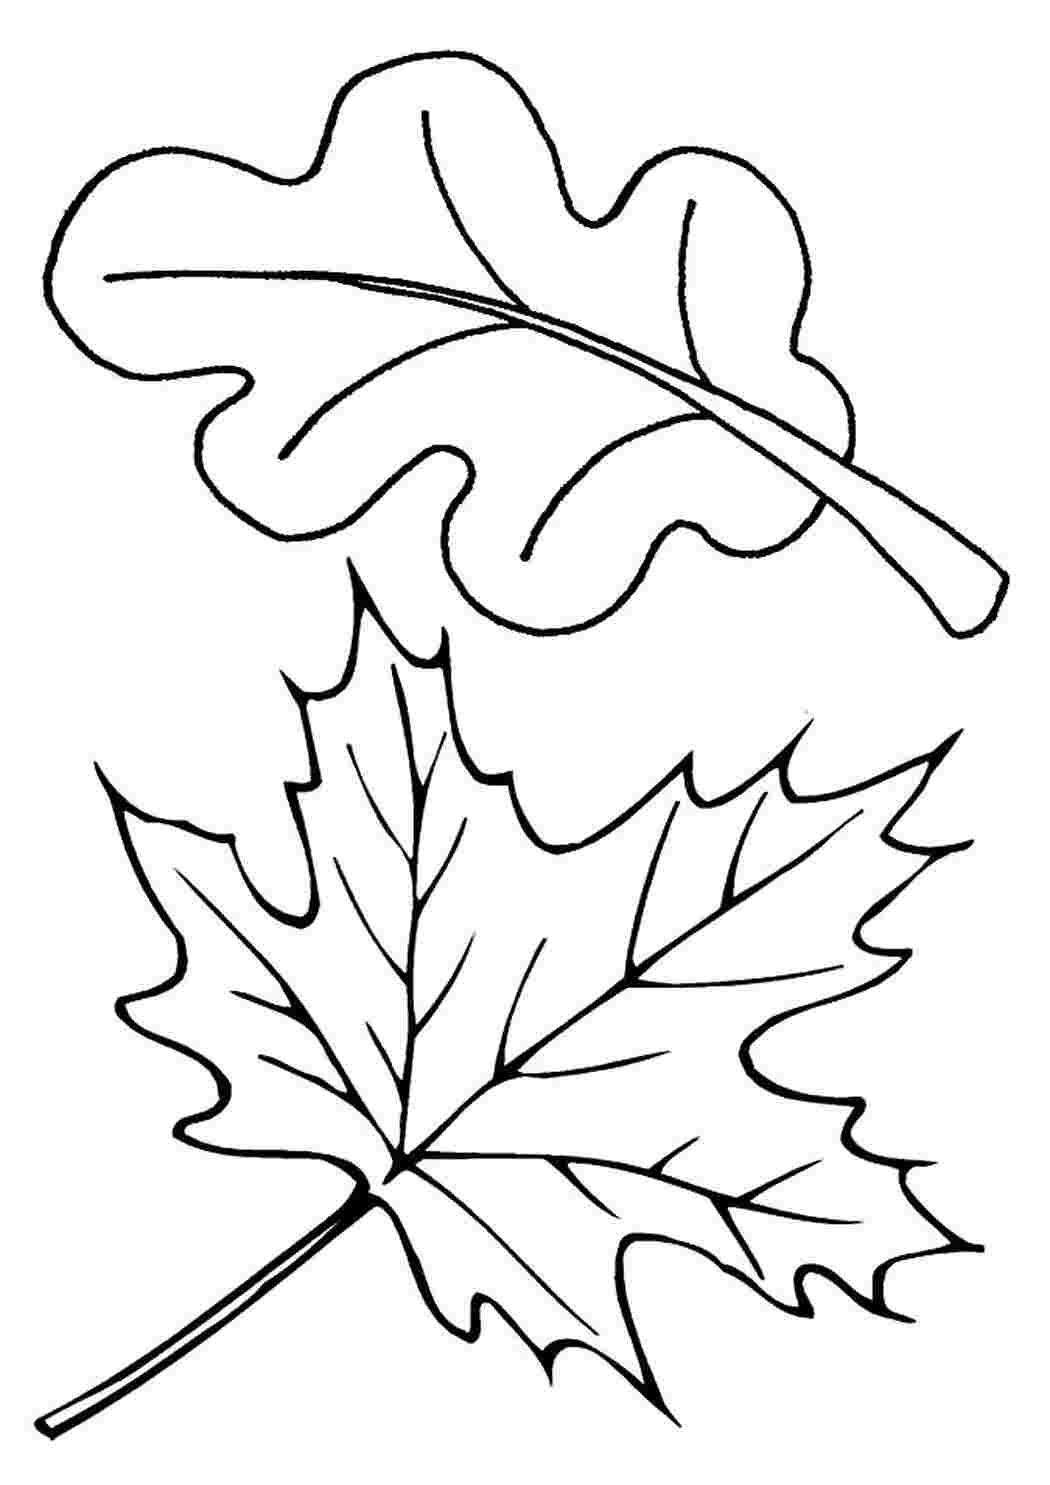 Листья деревьев Раскраски распечатать бесплатно. | Раскраски, Бесплатные раскраски, Листья